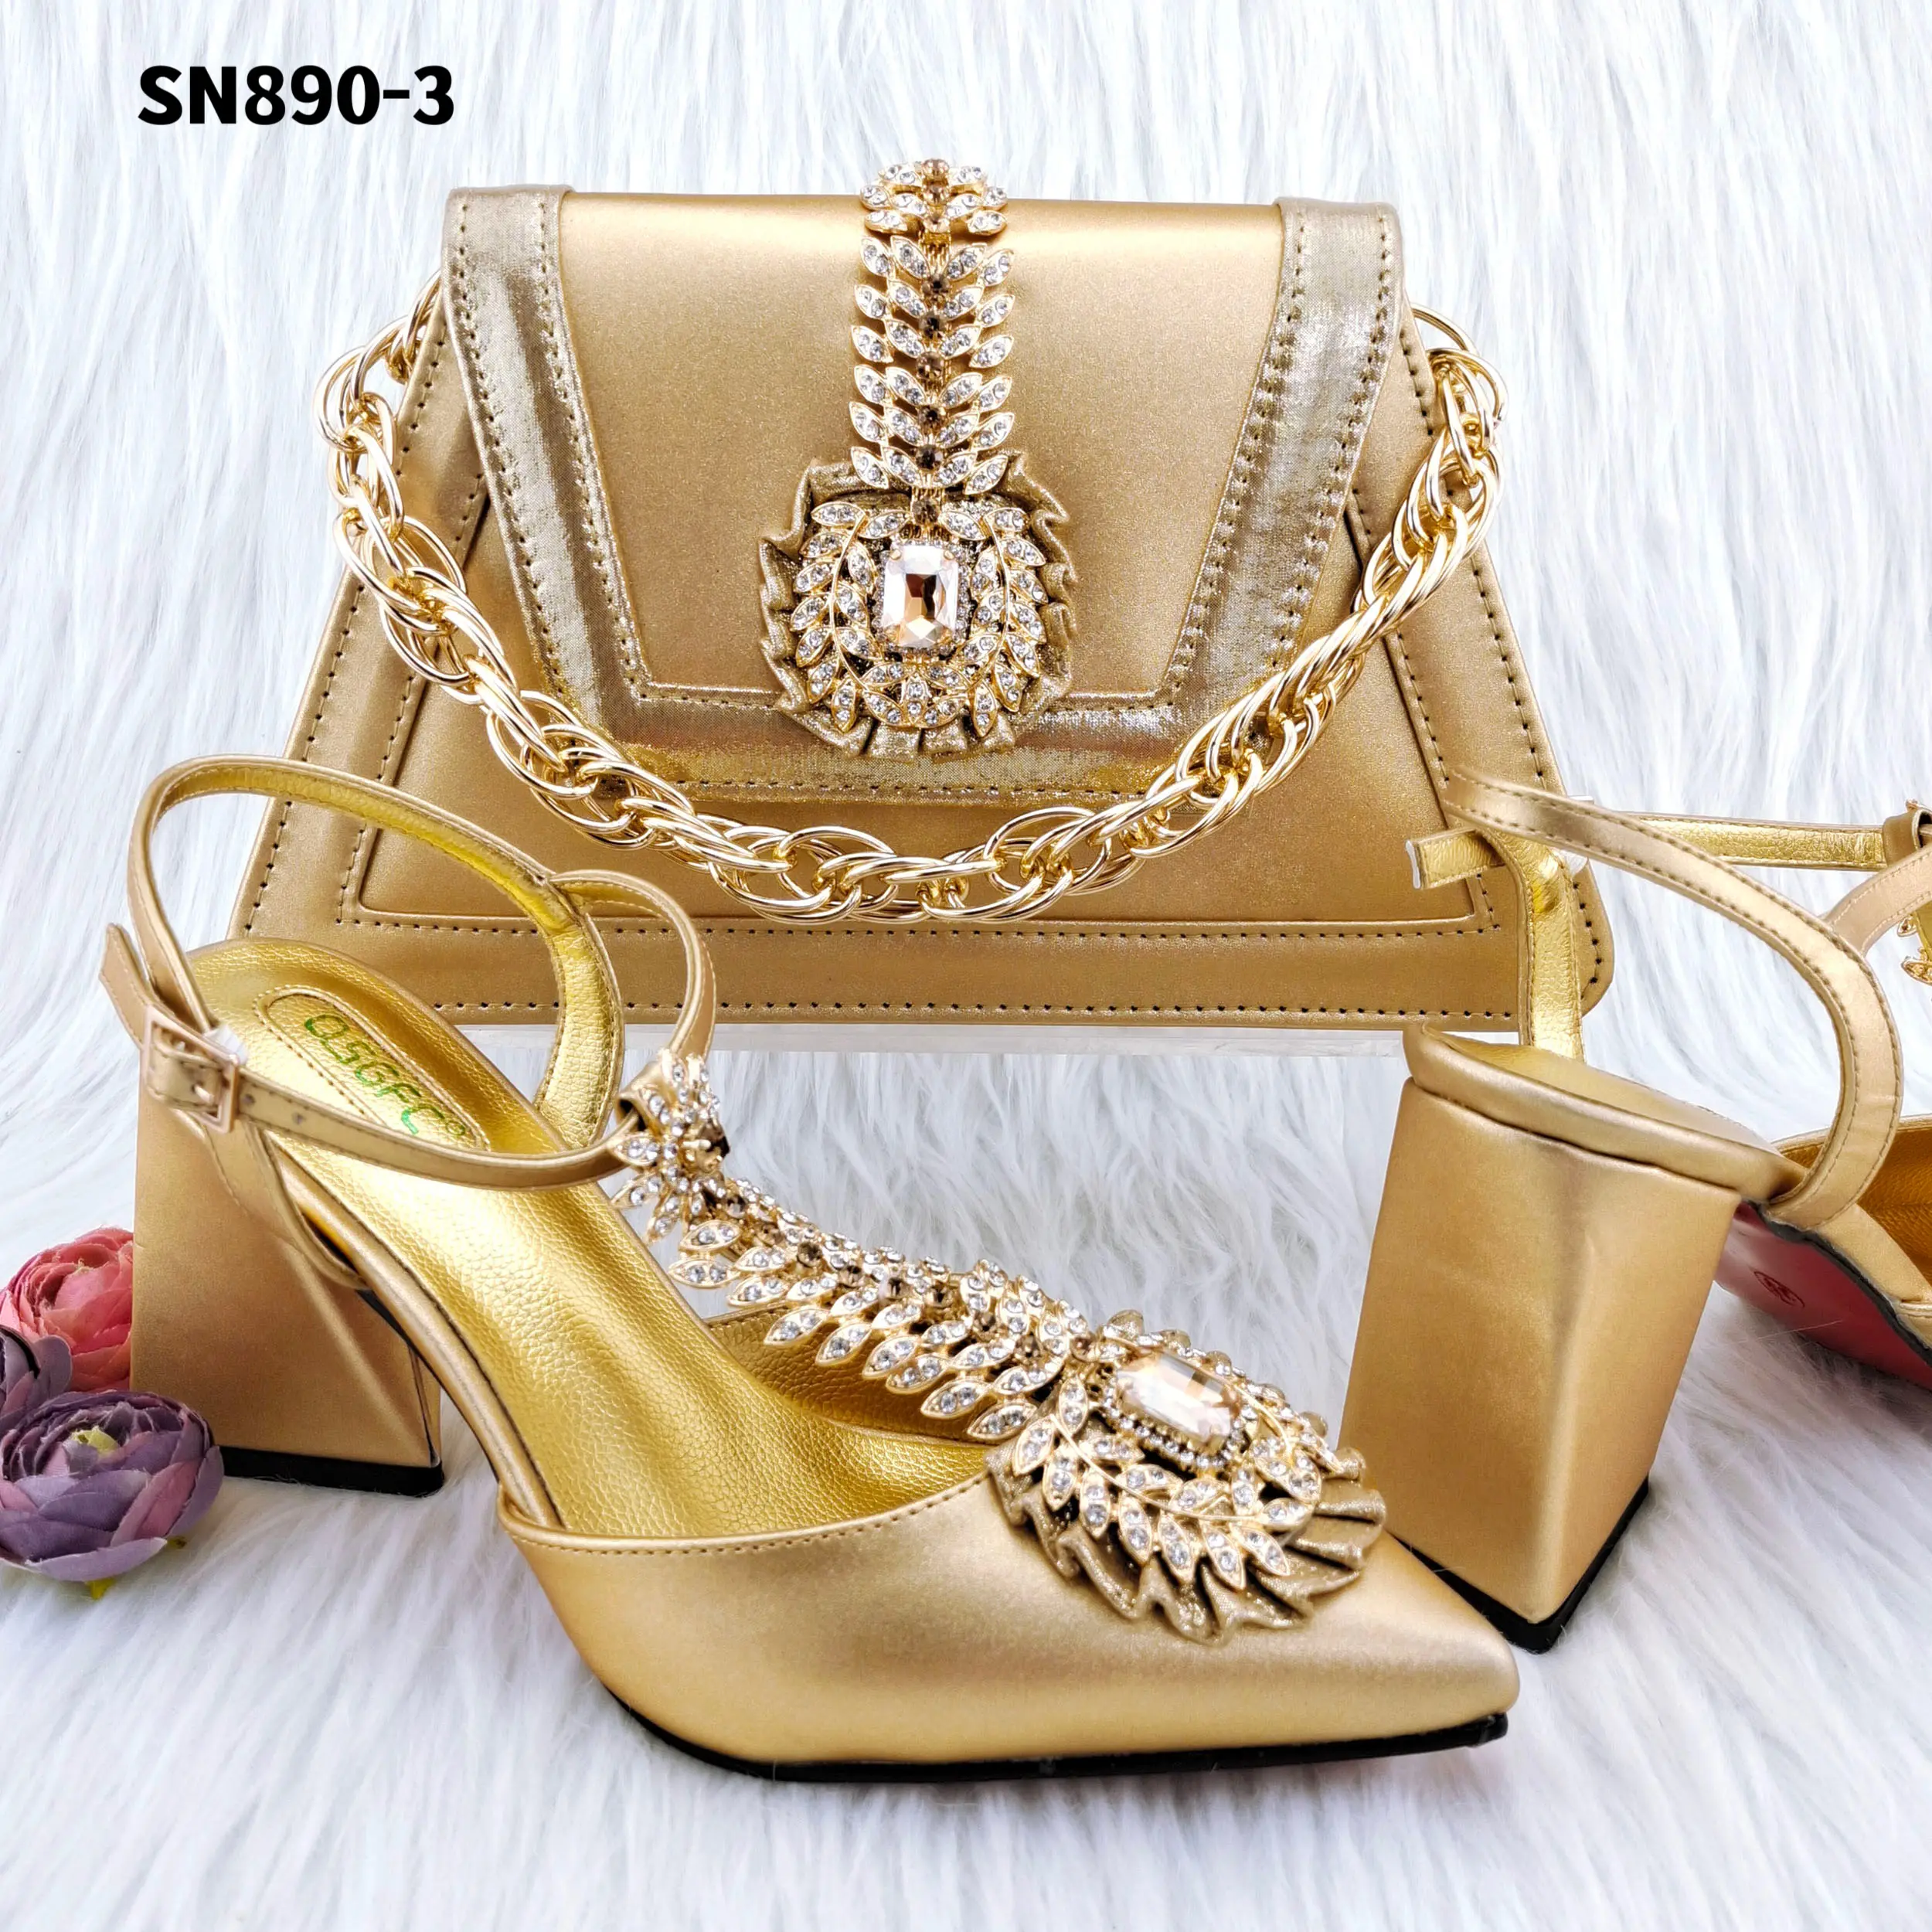 100% Made In Italy Gold Leder passend zum italienischen Schuh-und Taschen set für den Hochzeits stil